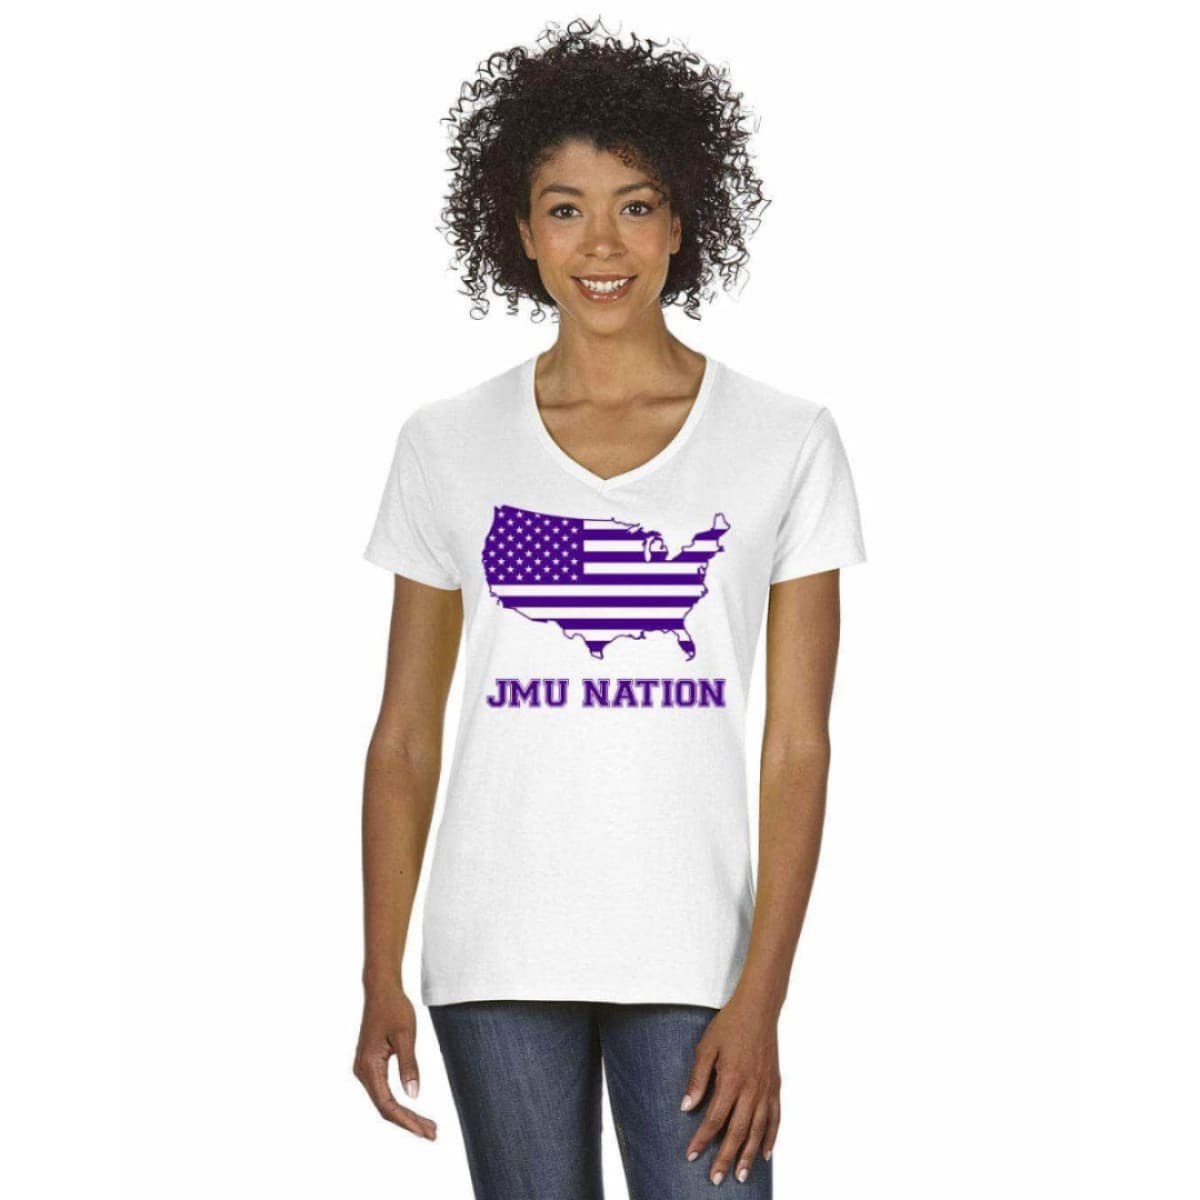 Women’s V-Neck Short Sleeve T-Shirt - S / White w/Purple